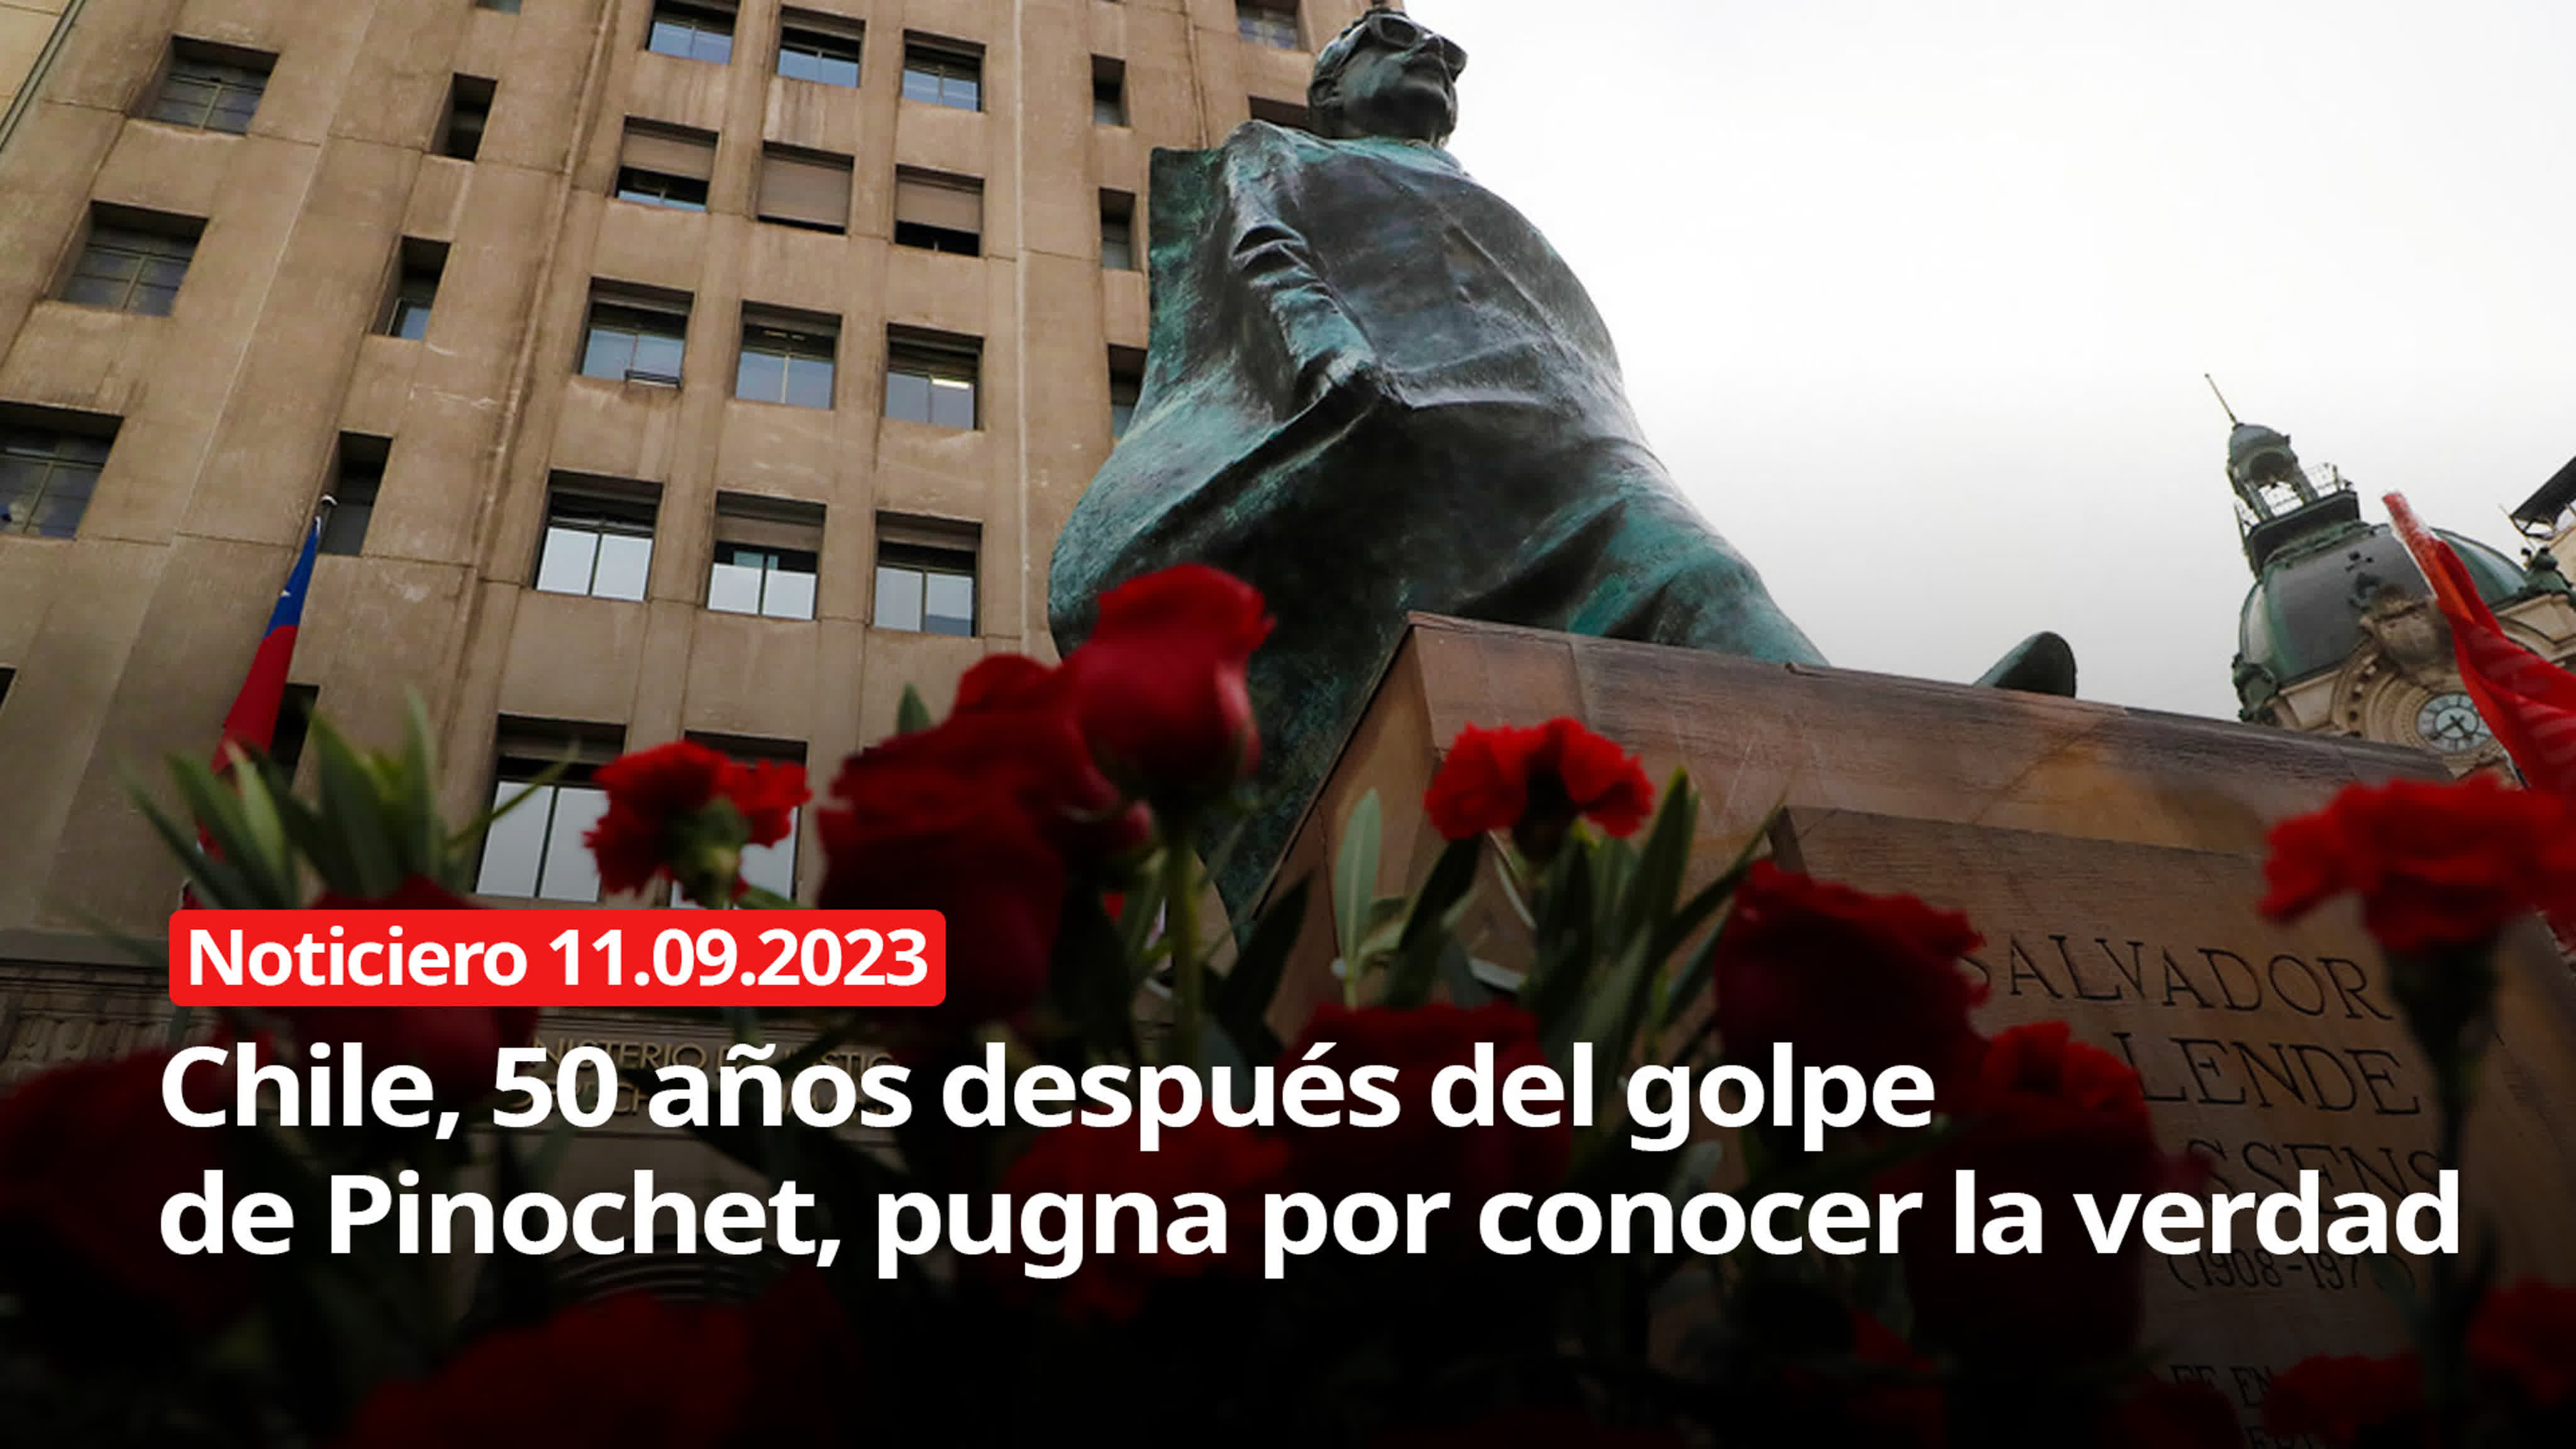 Chile, 50 años después del golpe de pinochet, pugna por conocer la verdad noticiero rt 11/09/2022